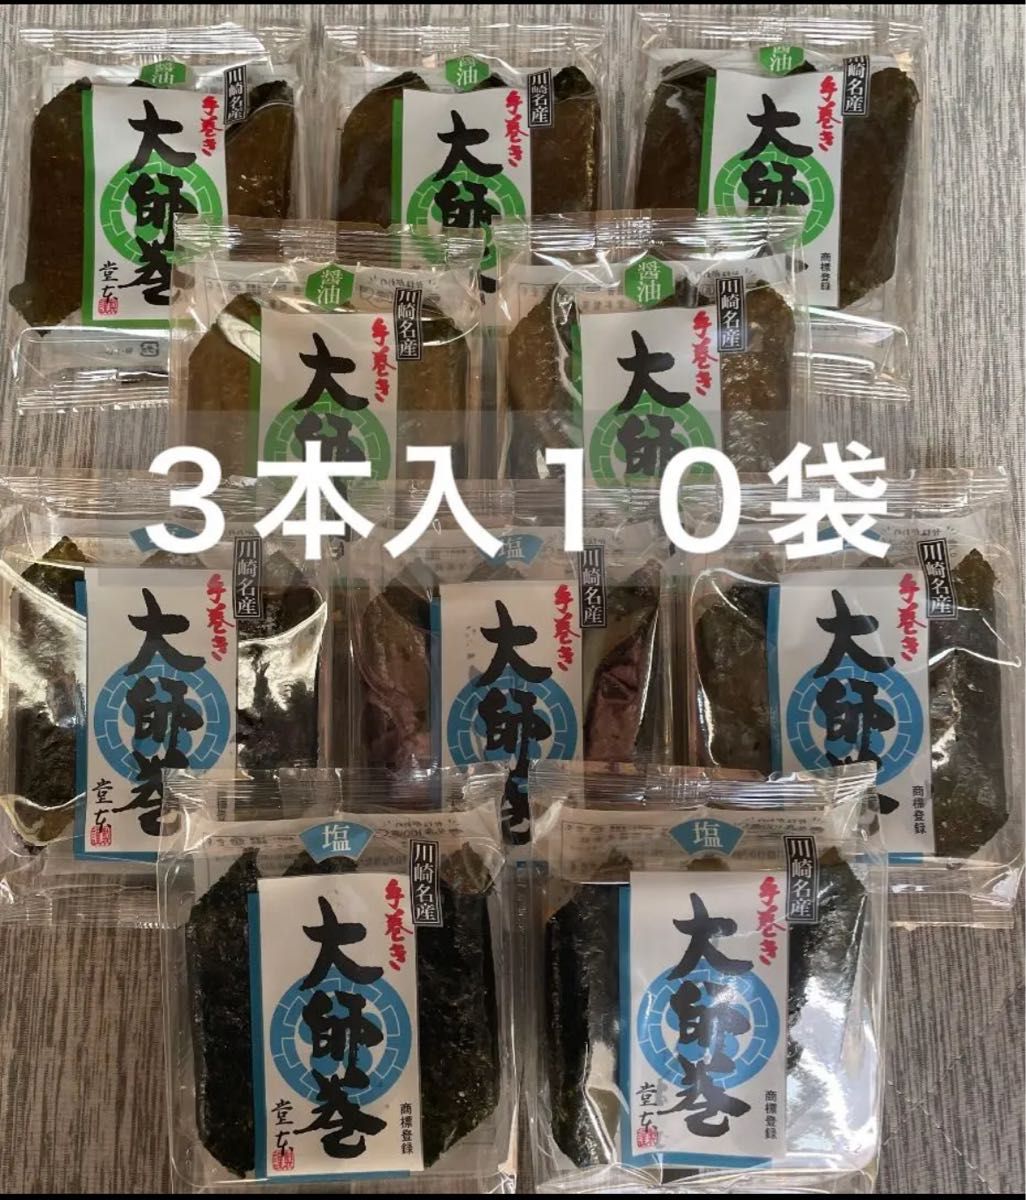 川崎名産 堂本製菓 大師巻 3本入り10袋